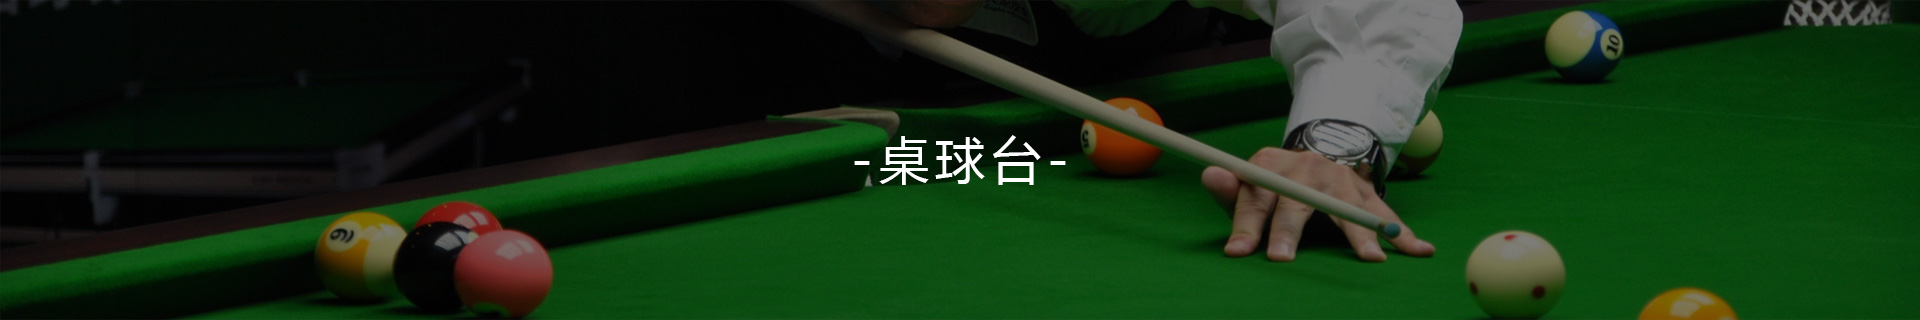 火狐体育手机网页版登录:它将带来中式台球的新革新